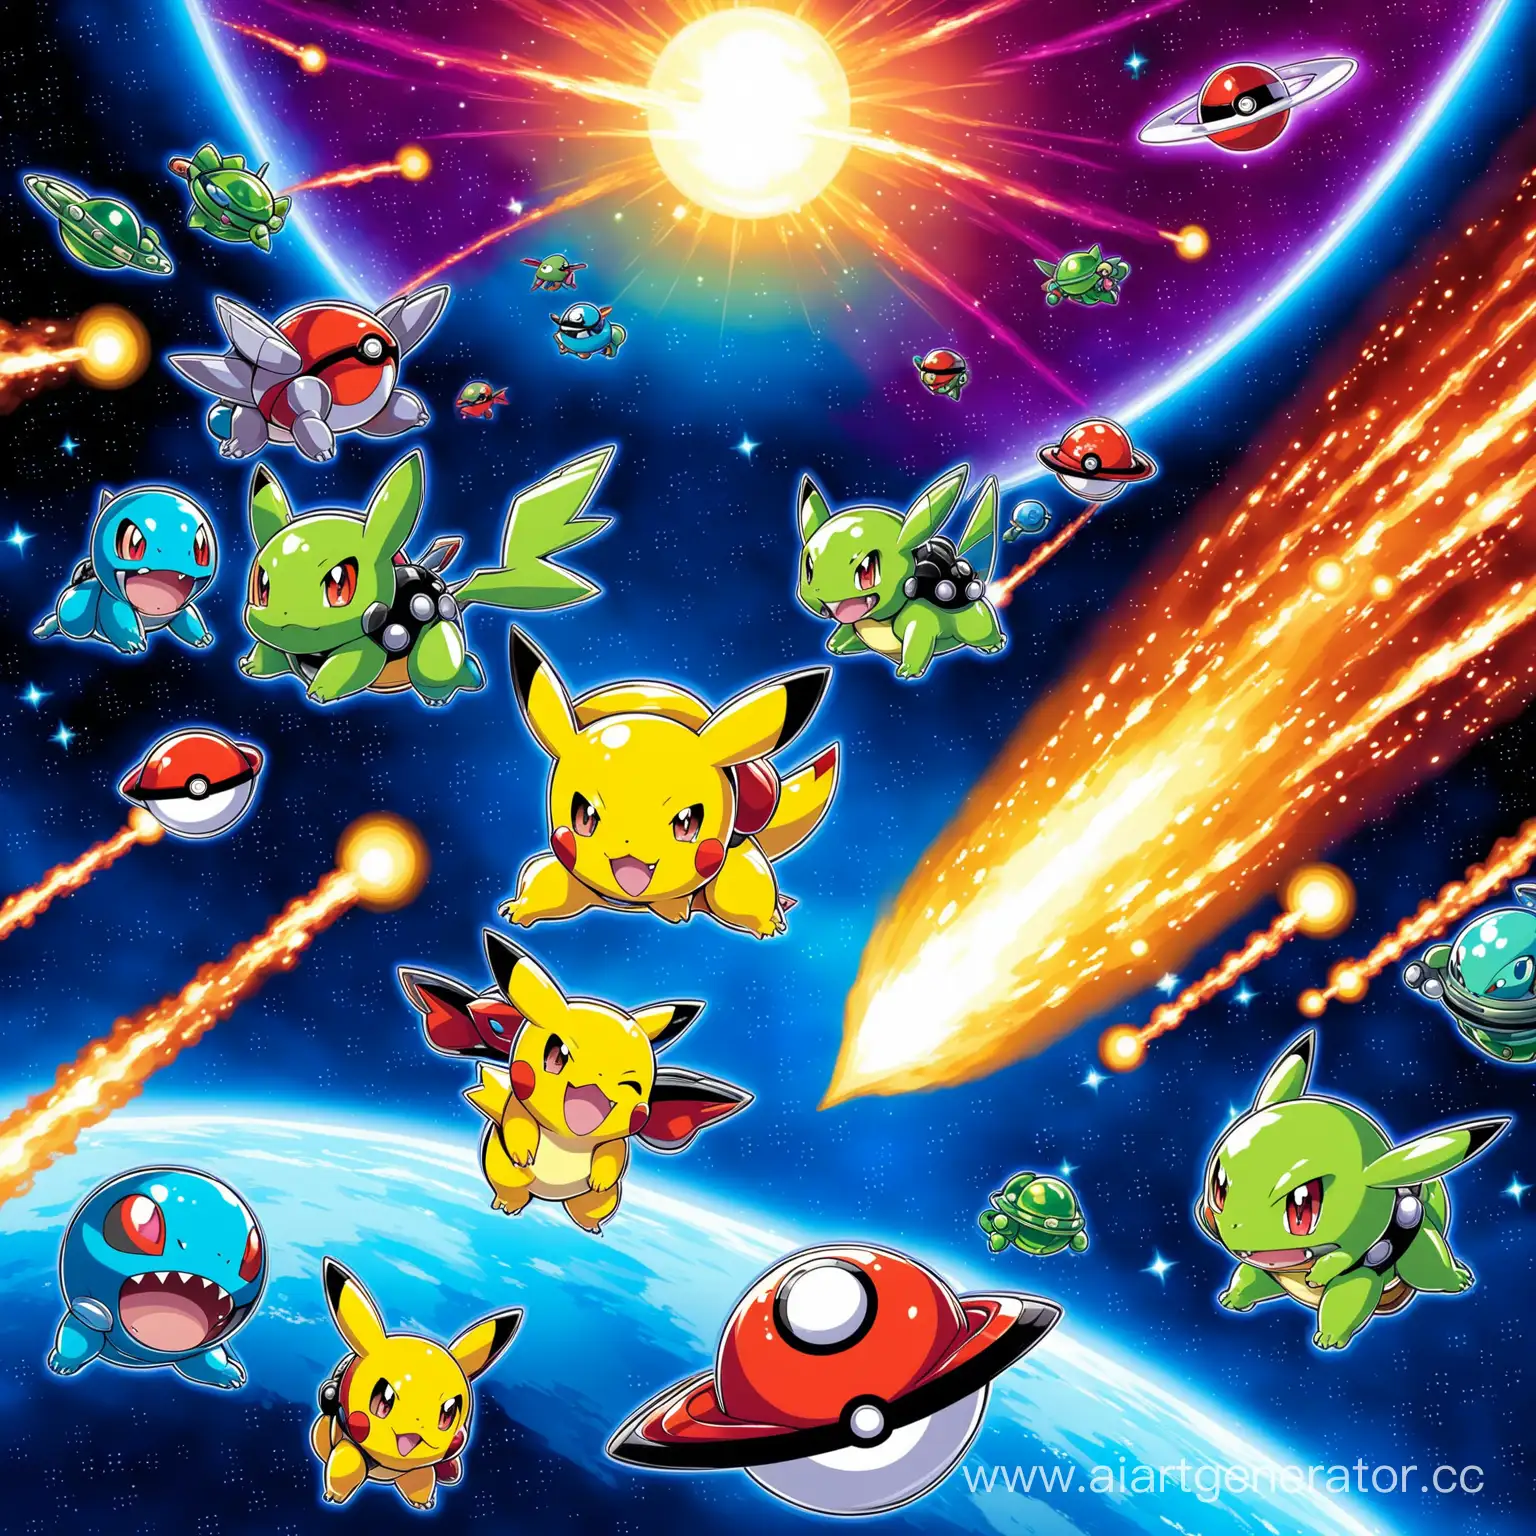 Pokemons-Battle-Alien-Invaders-in-Galactic-Space